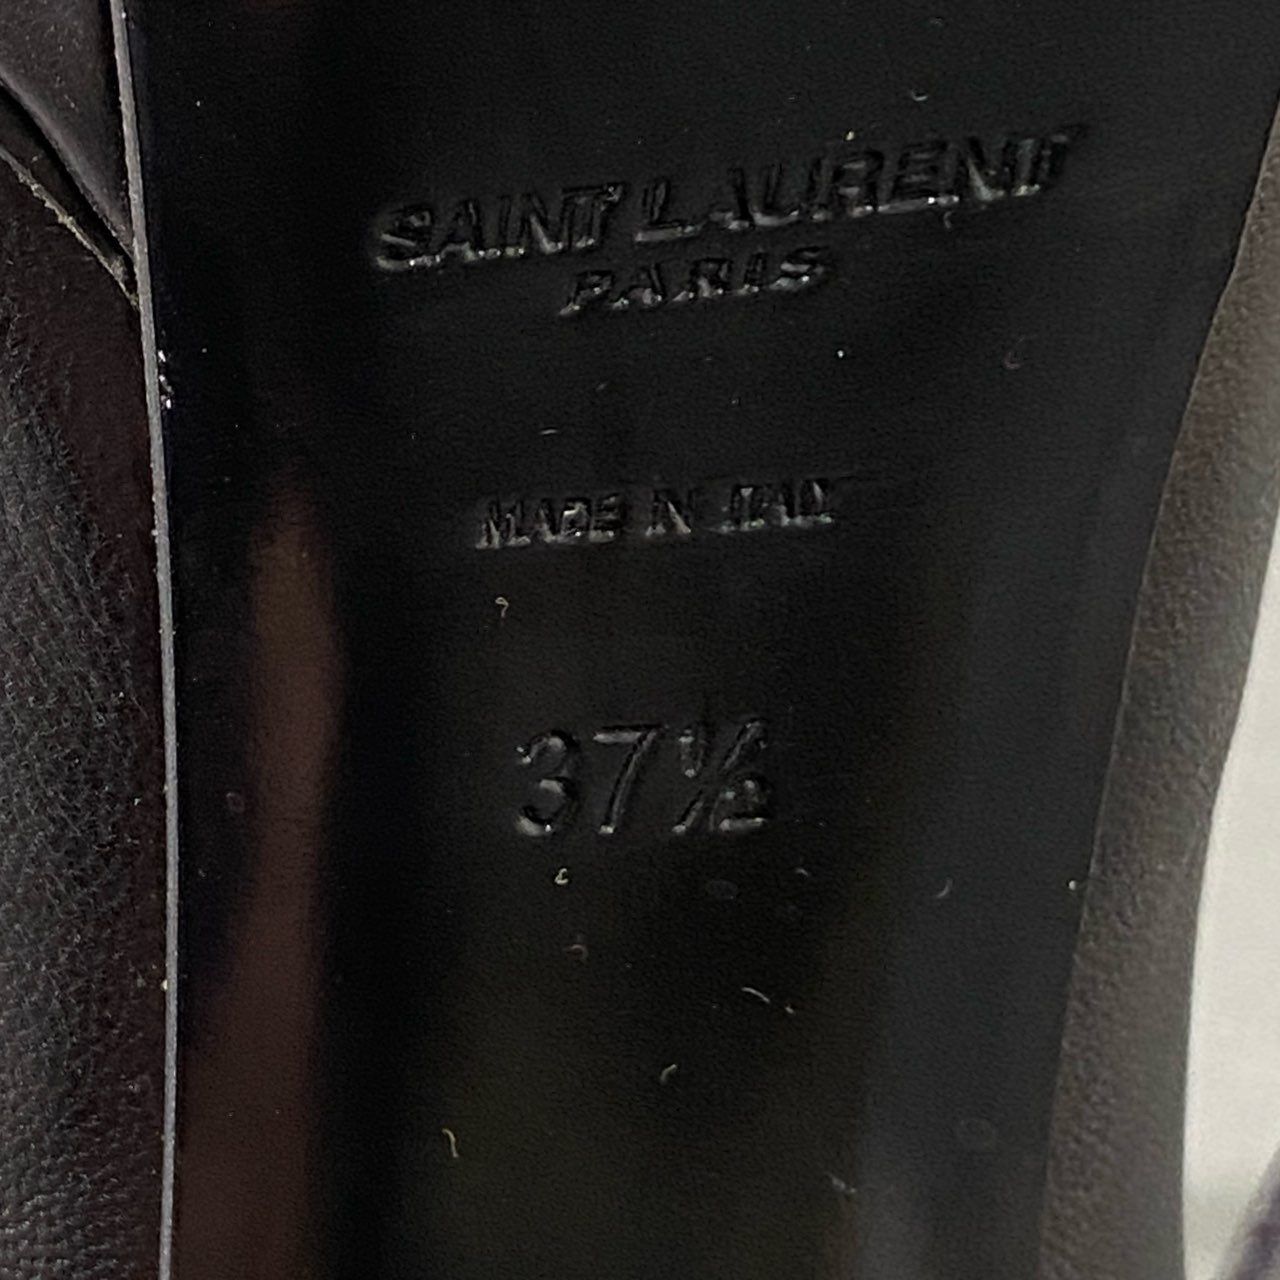 3d16 SAINT LAURENT PARIS サンローランパリ ピンヒール 編み上げデザイン レザーパンプス 37 1/2 ブラック レディース 靴